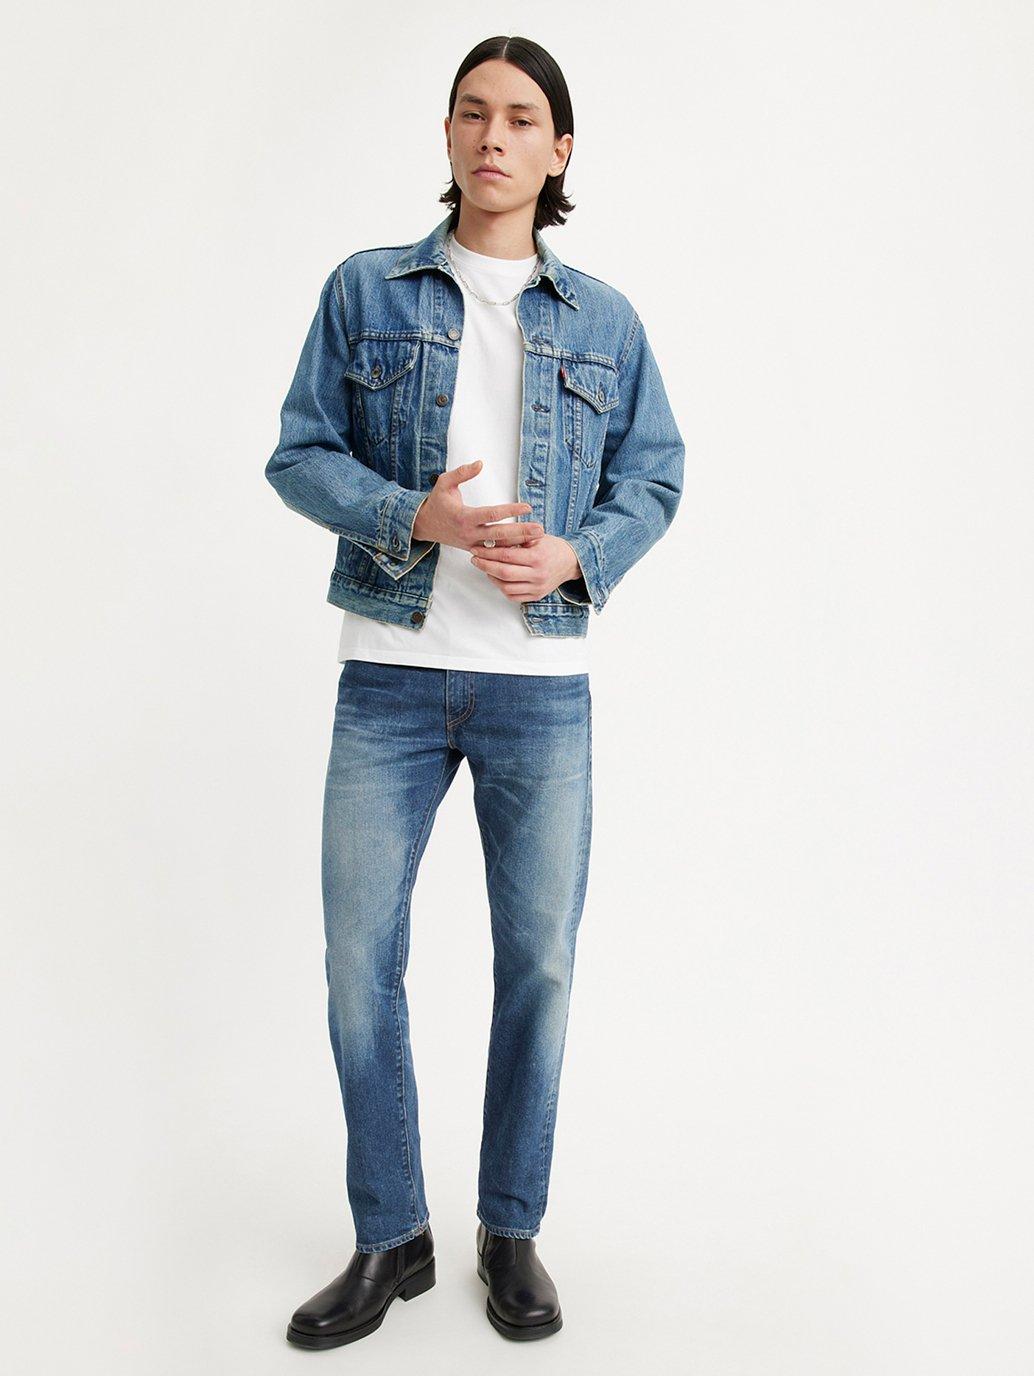 Buy Levi's® Men's 511™ Slim Jeans| Levi’s Official Online Store SG